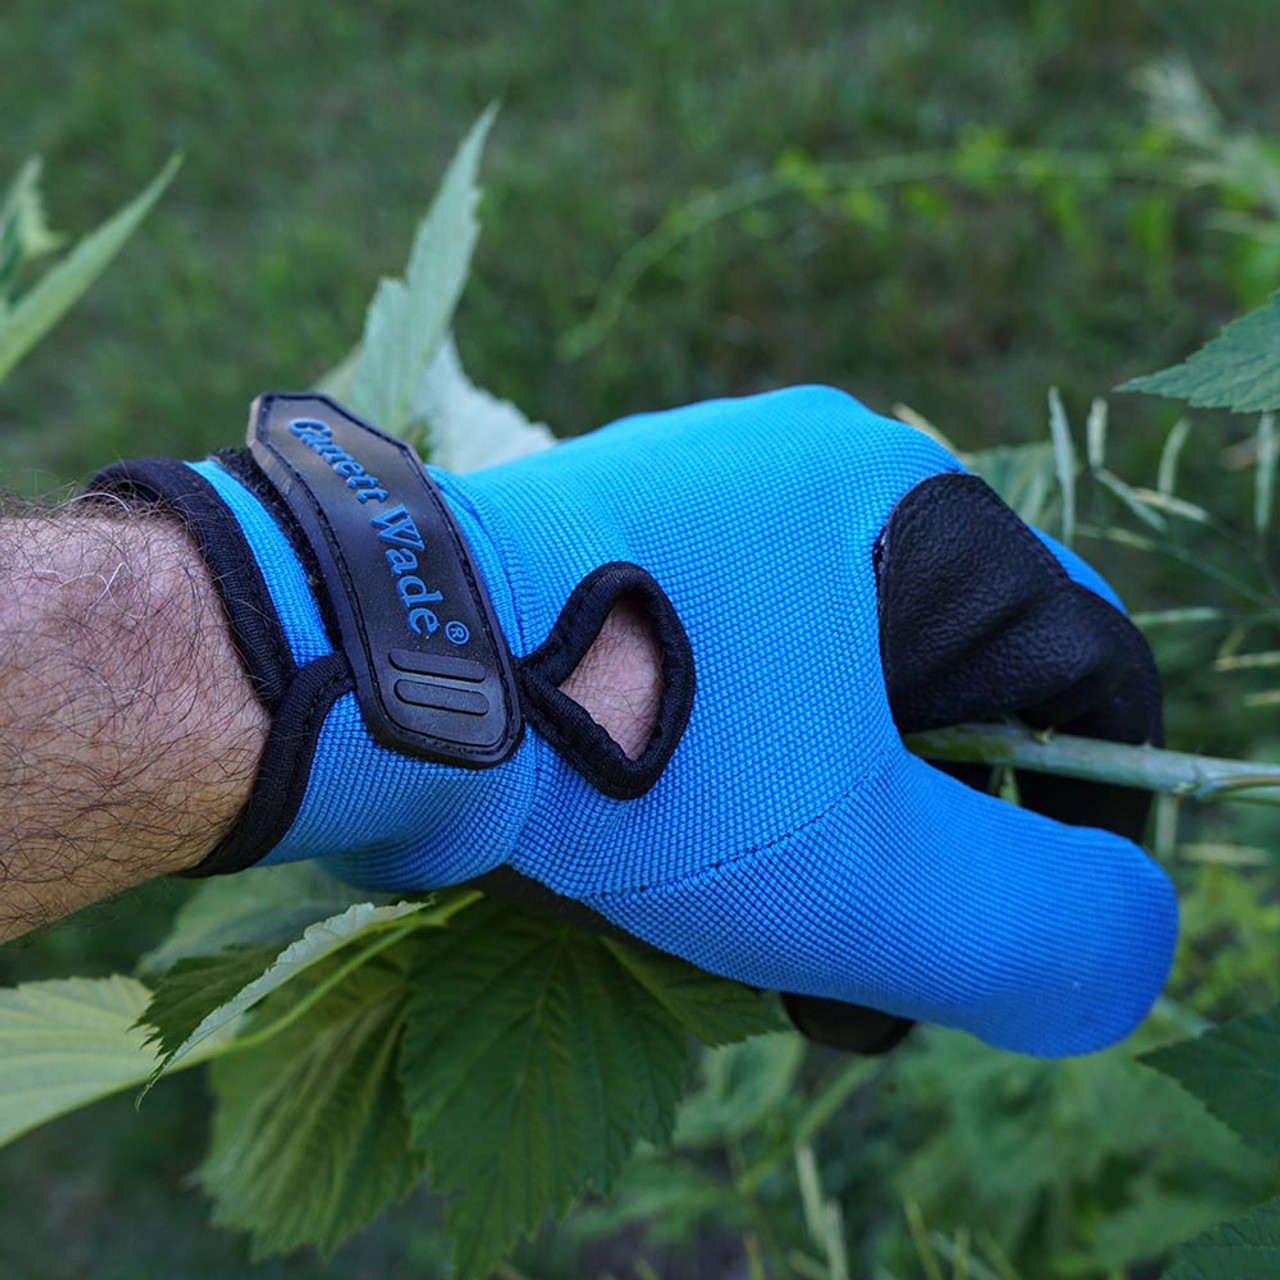 Cut & Puncture Resistant Gloves